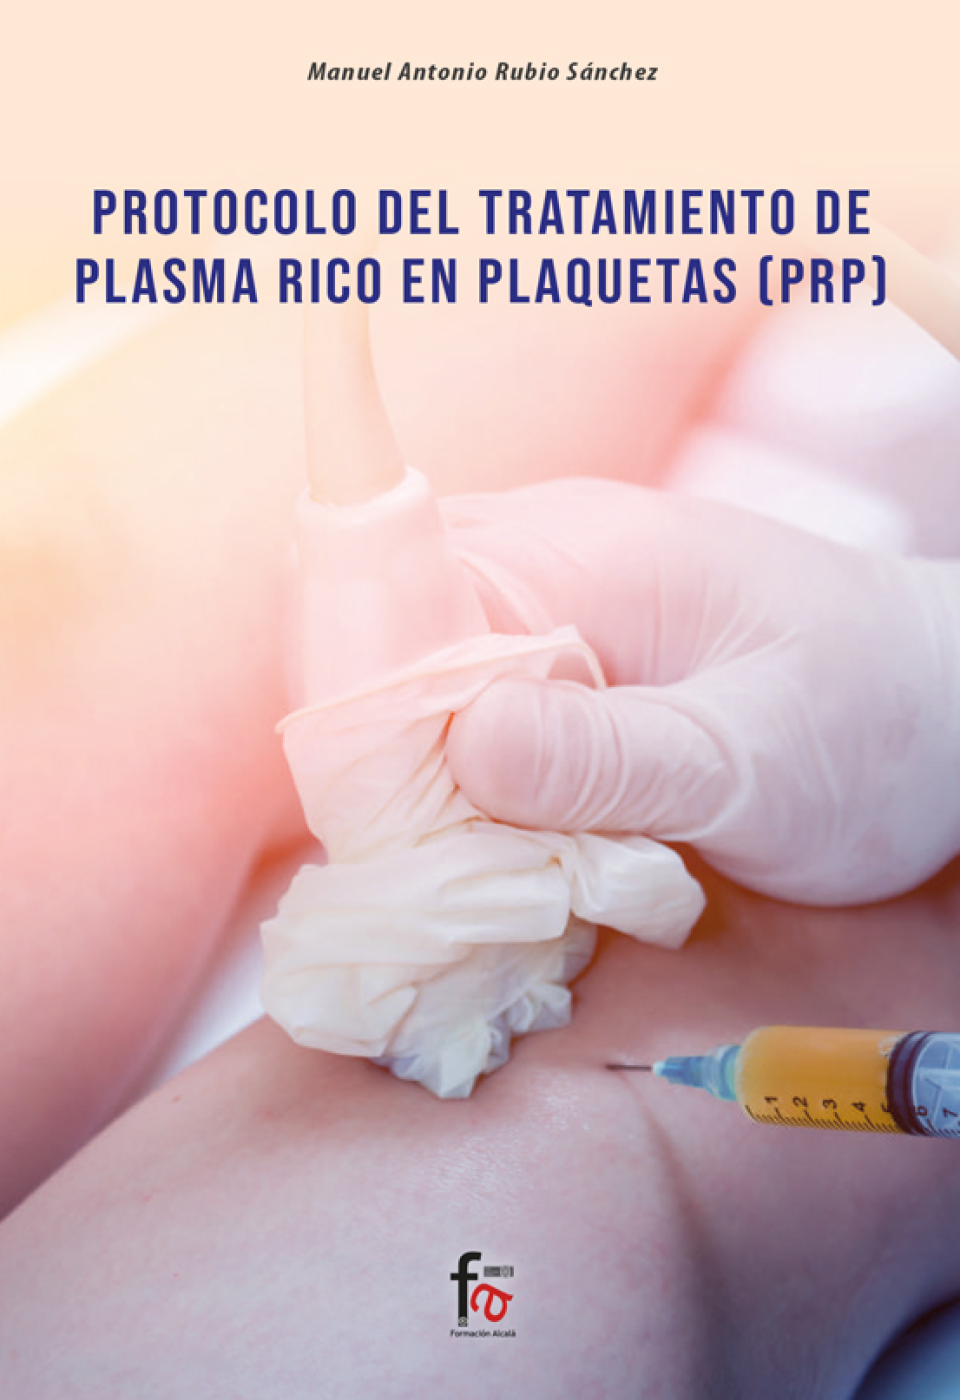 Protocolo del Tratamiento de Plasma Rico en Plaquetas - PRP